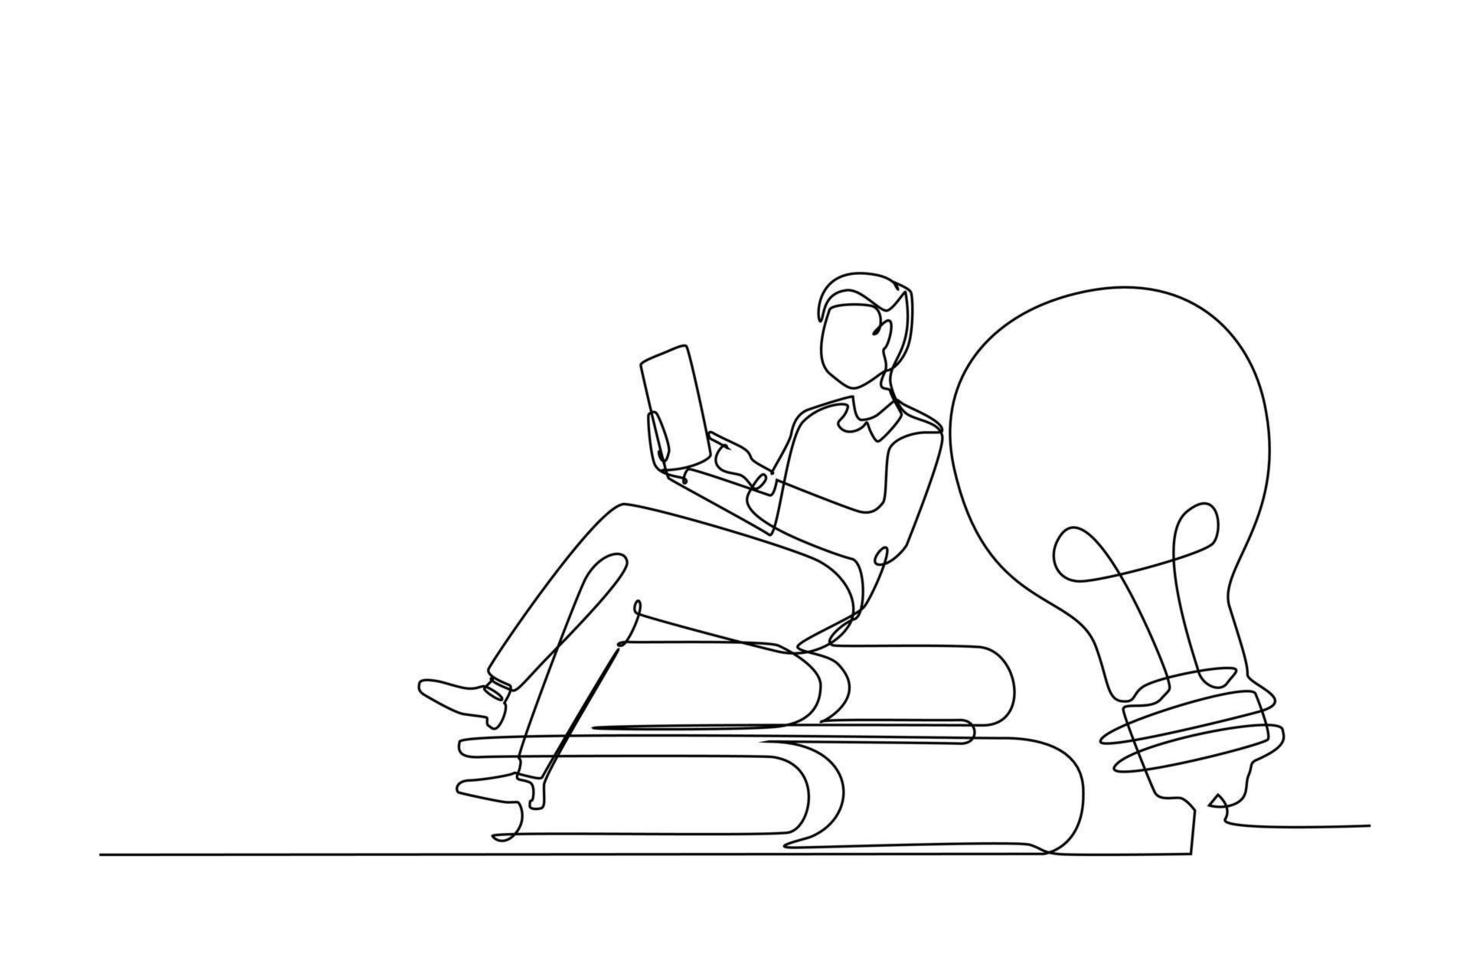 Mann Sitzung auf ein Stapel von Buch während lesen zu erhalten das Wissen und Idee. Single kontinuierlich Linie Zeichnung Vektor Illustration zum lehrreich Design Konzept